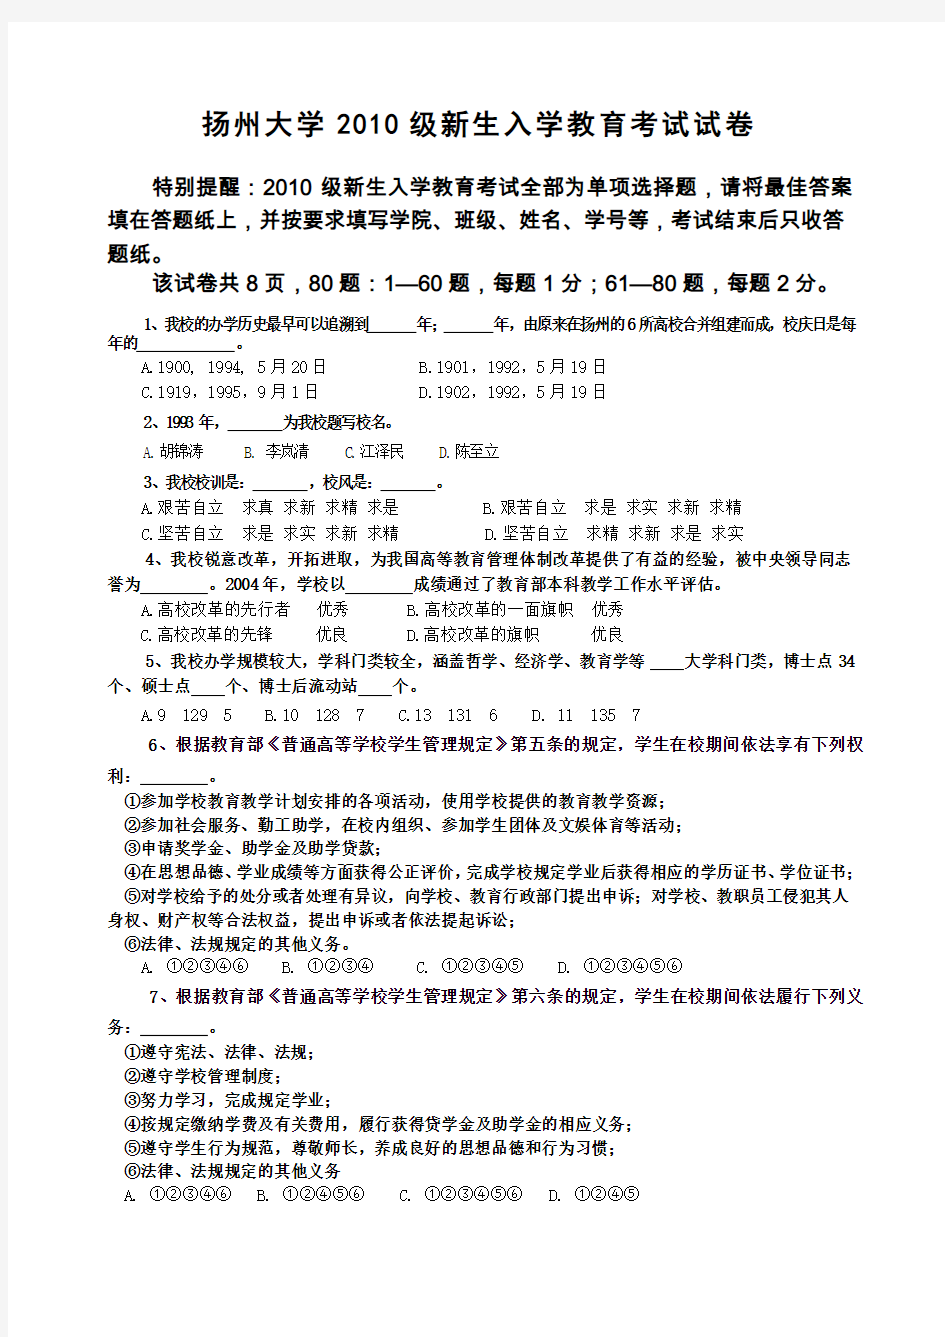 扬州大学级新生入学教育考试试卷定版2